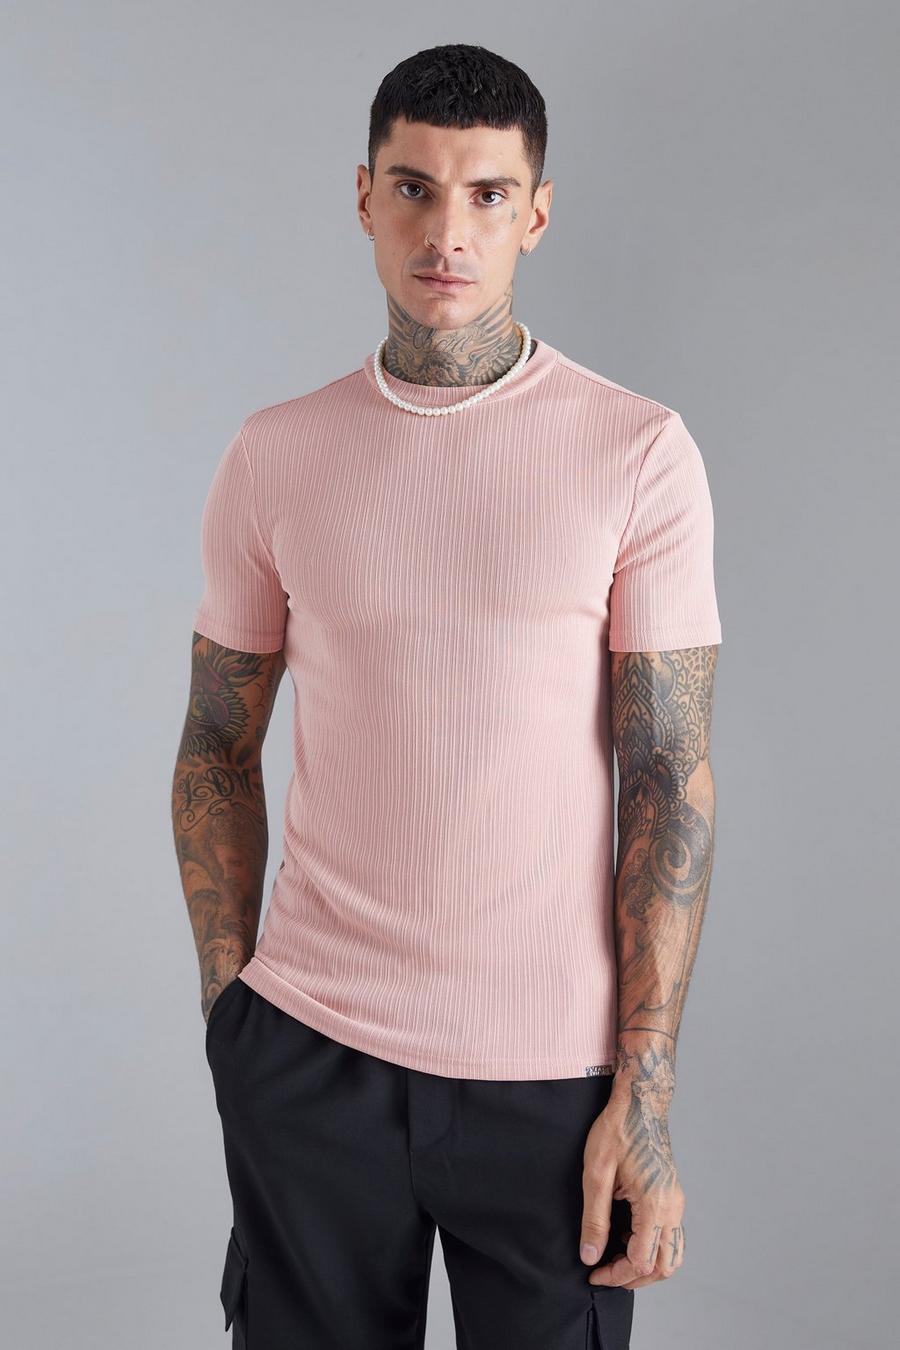 Camiseta texturizada ajustada al músculo, Light pink